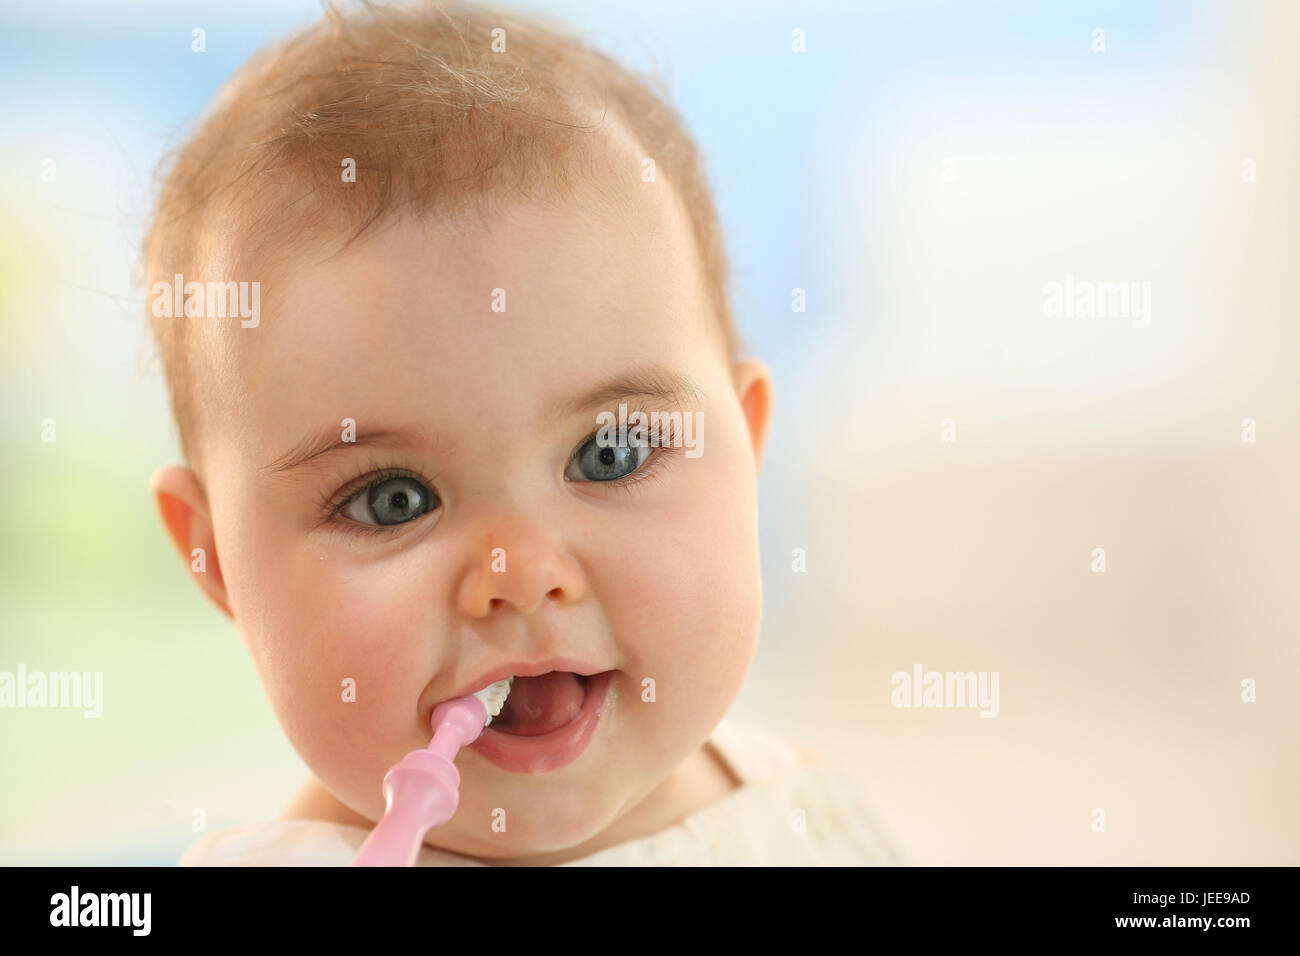 Baby, baby toothbrush, chew, portrait, Stock Photo